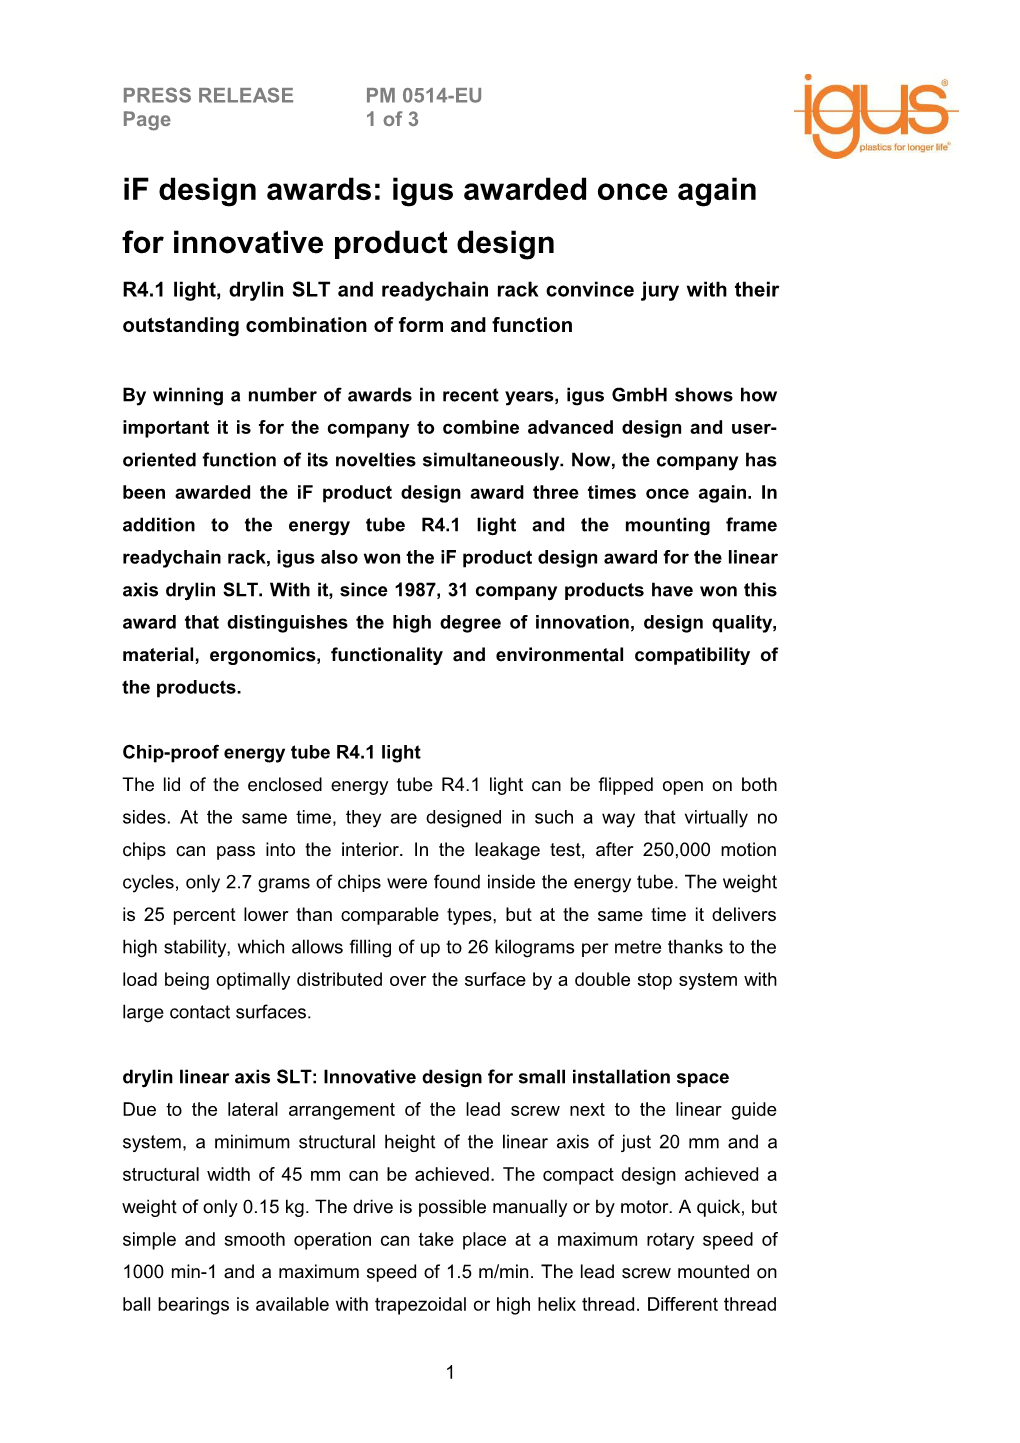 If Product Design Award Für Drylin SLT, Readychain Rack Und R4